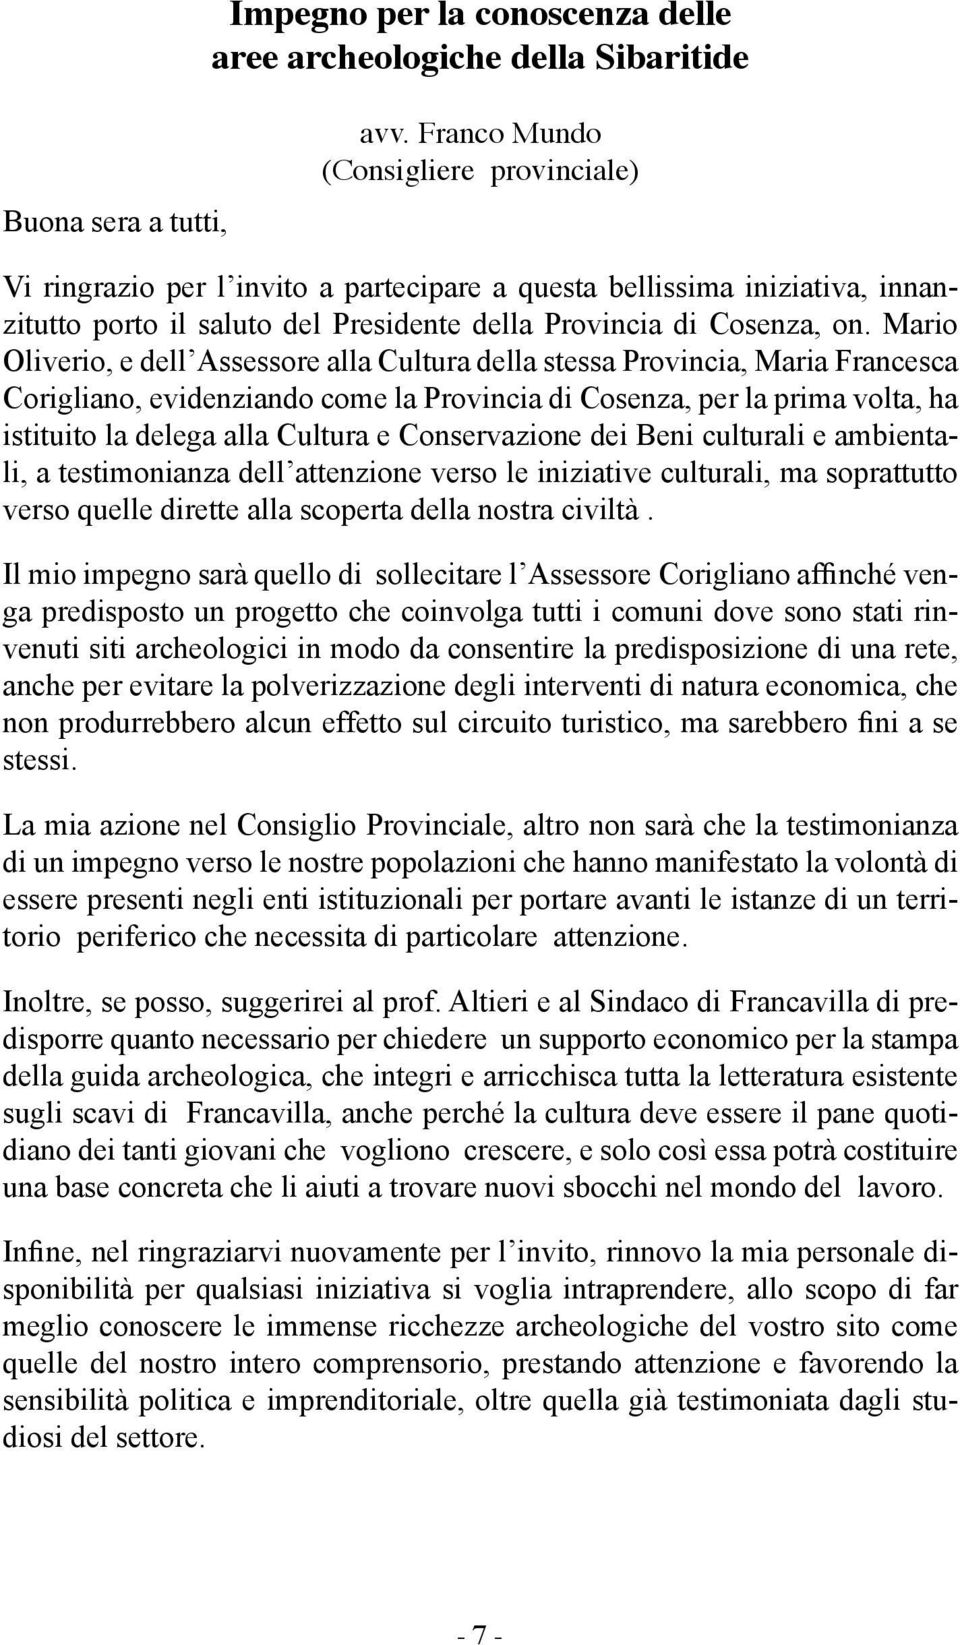 Mario Oliverio, e dell Assessore alla Cultura della stessa Provincia, Maria Francesca Corigliano, evidenziando come la Provincia di Cosenza, per la prima volta, ha istituito la delega alla Cultura e